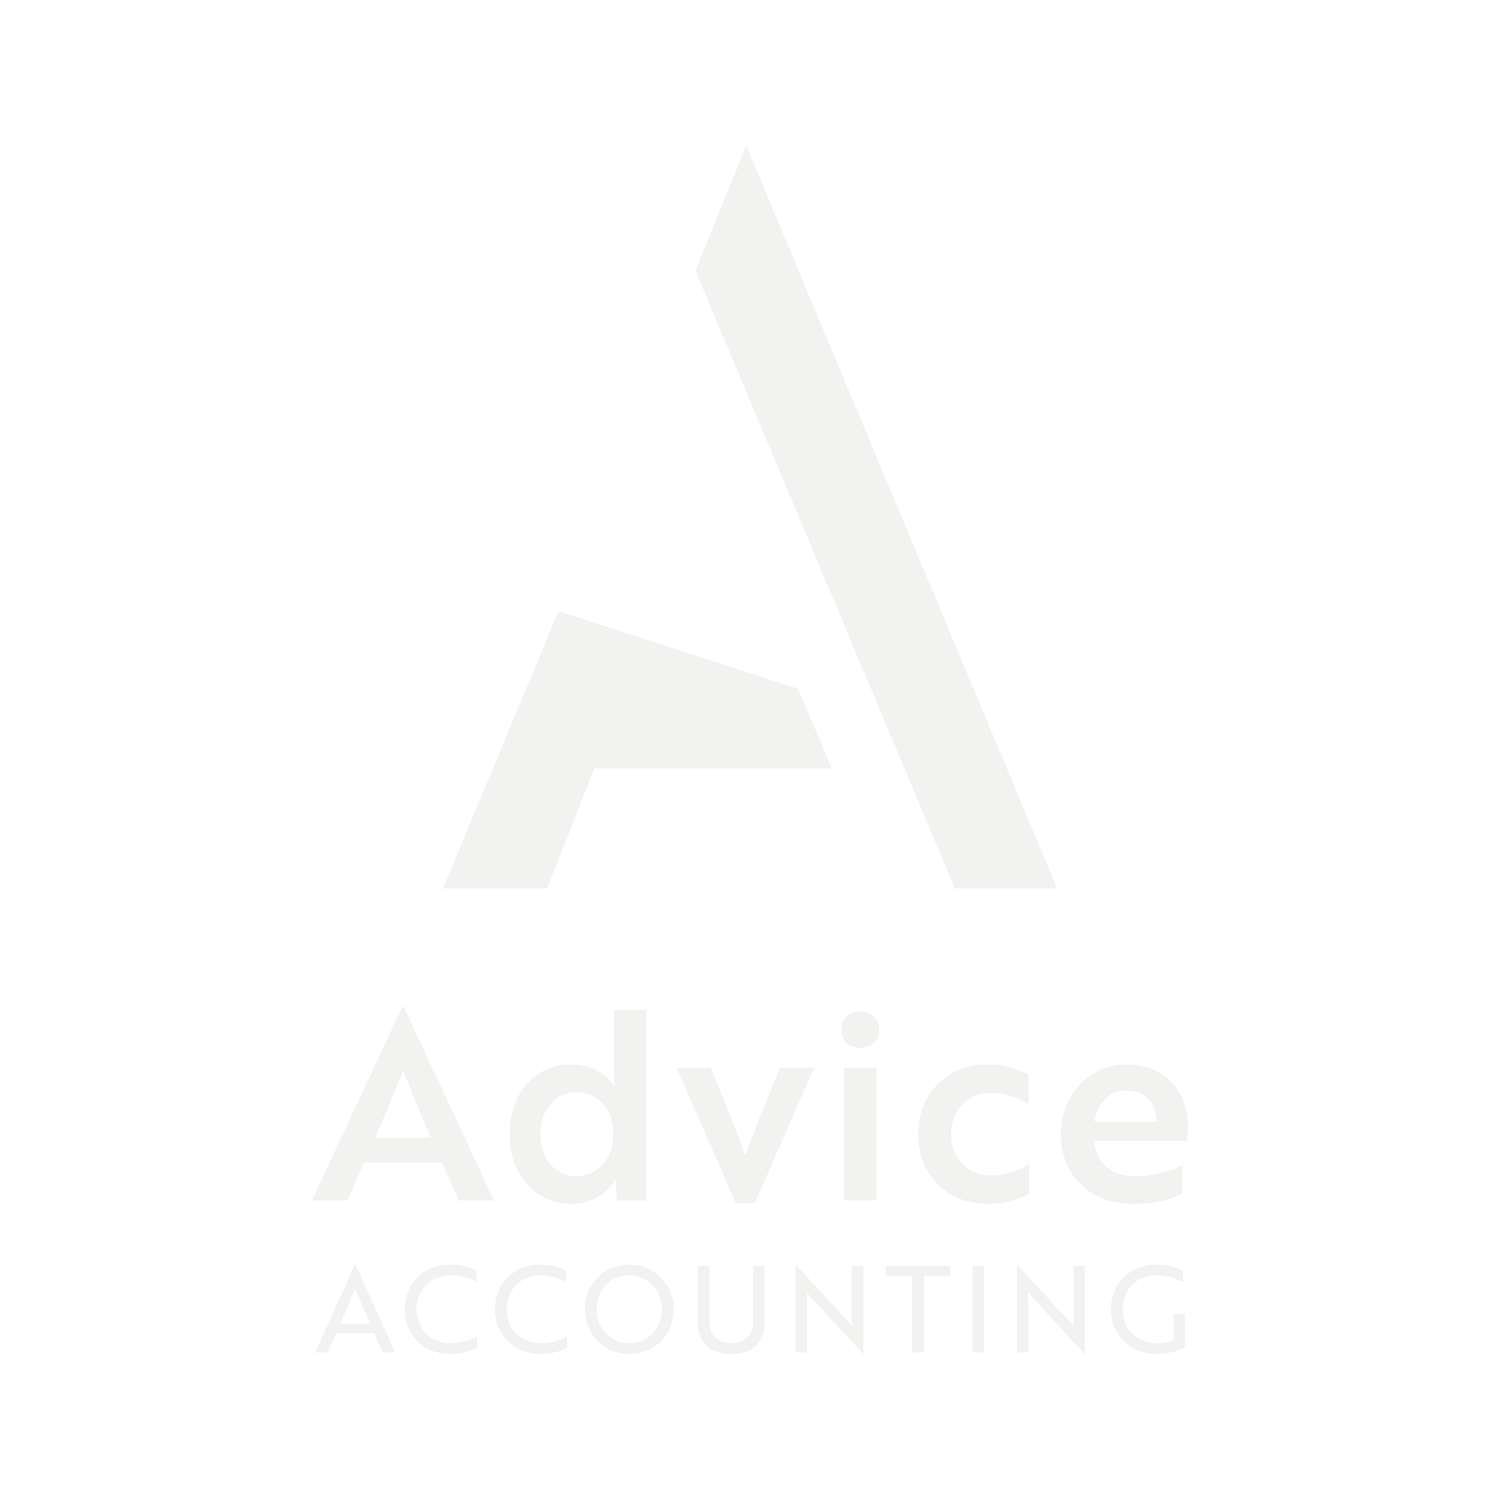 Advice Accounting